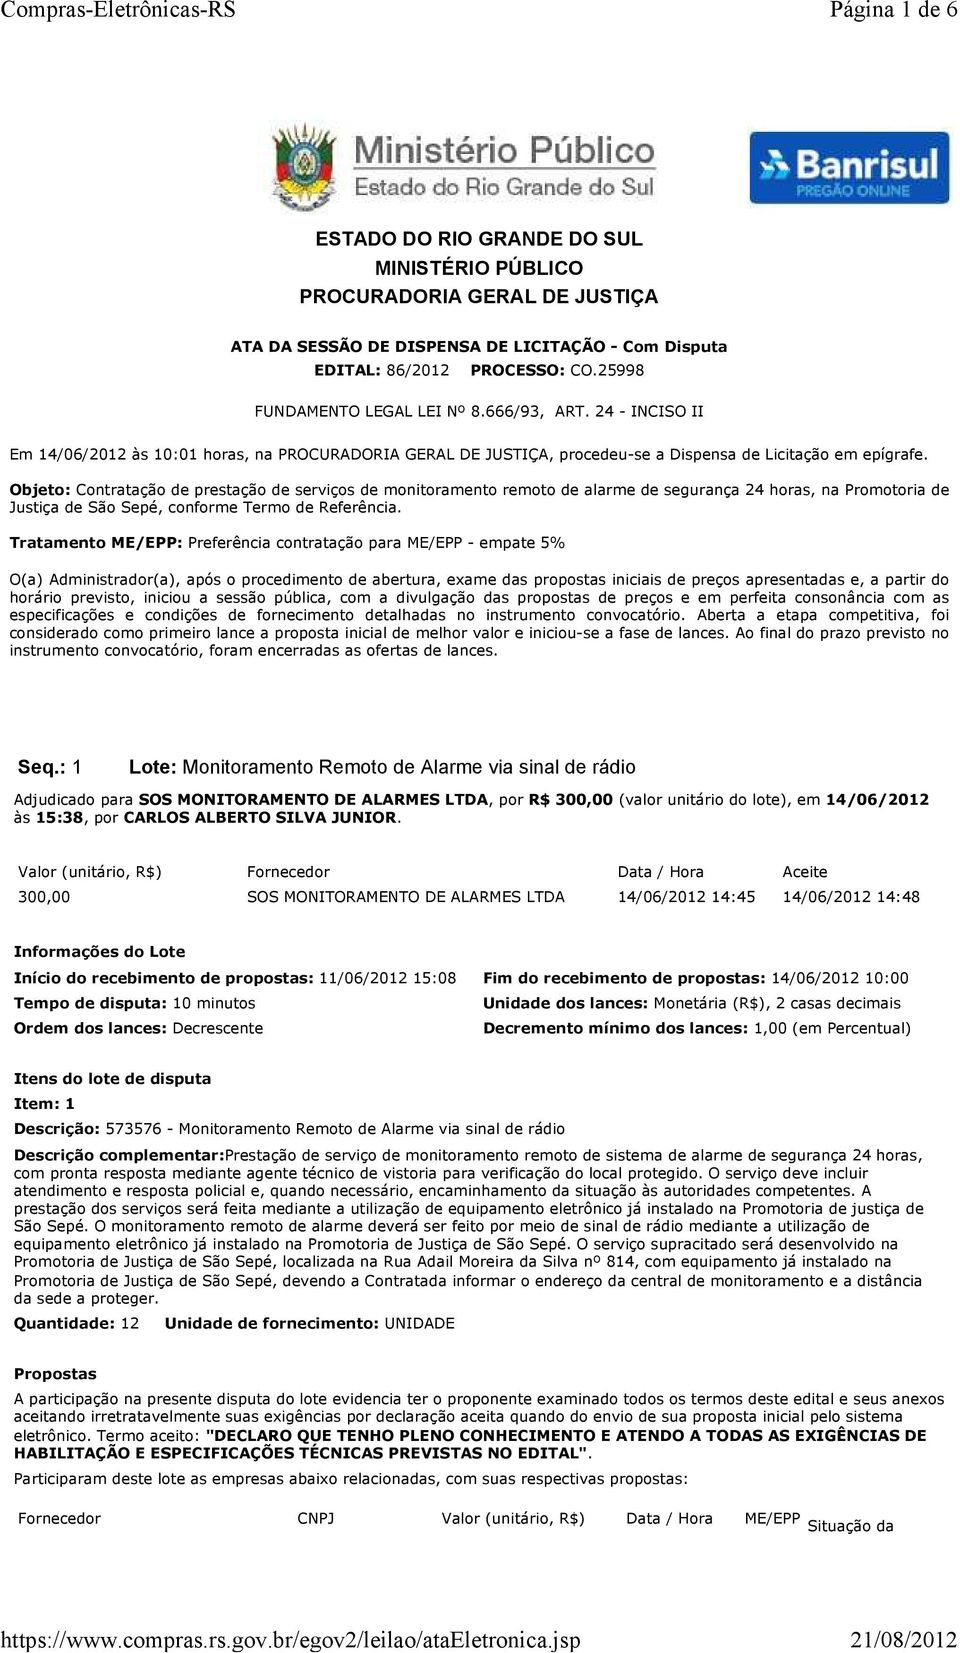 Objeto: Contratação de prestação de serviços de monitoramento remoto de alarme de segurança 24 horas, na Promotoria de Justiça de São Sepé, conforme Termo de Referência.